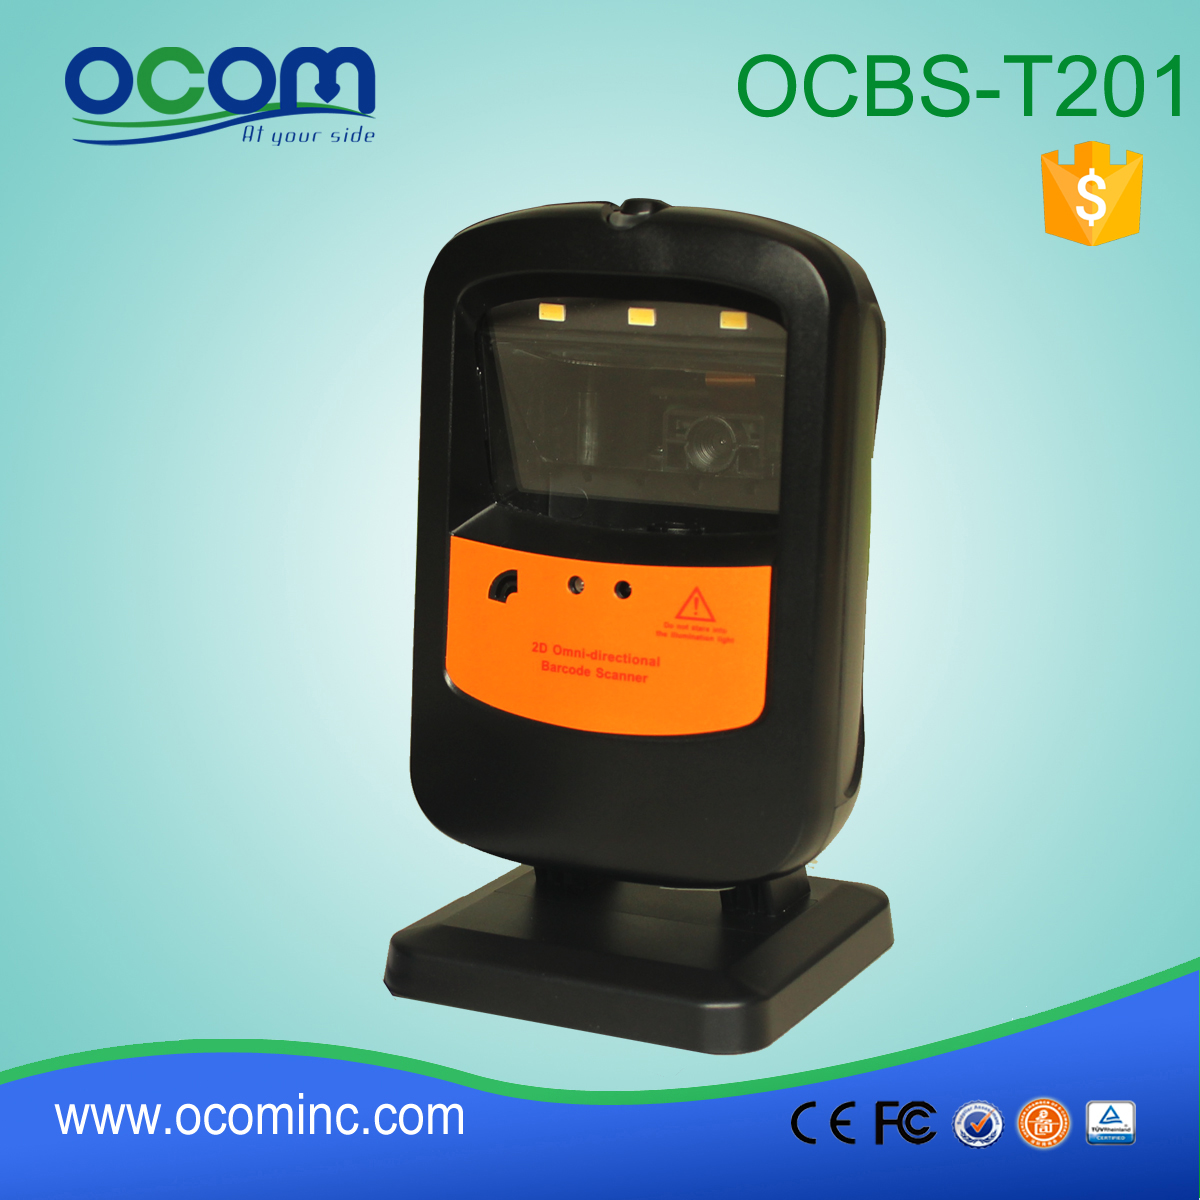 OCBS-T201: stałe mocowanie mini skaner kodów kreskowych USB, laserowy skaner kodów kreskowych